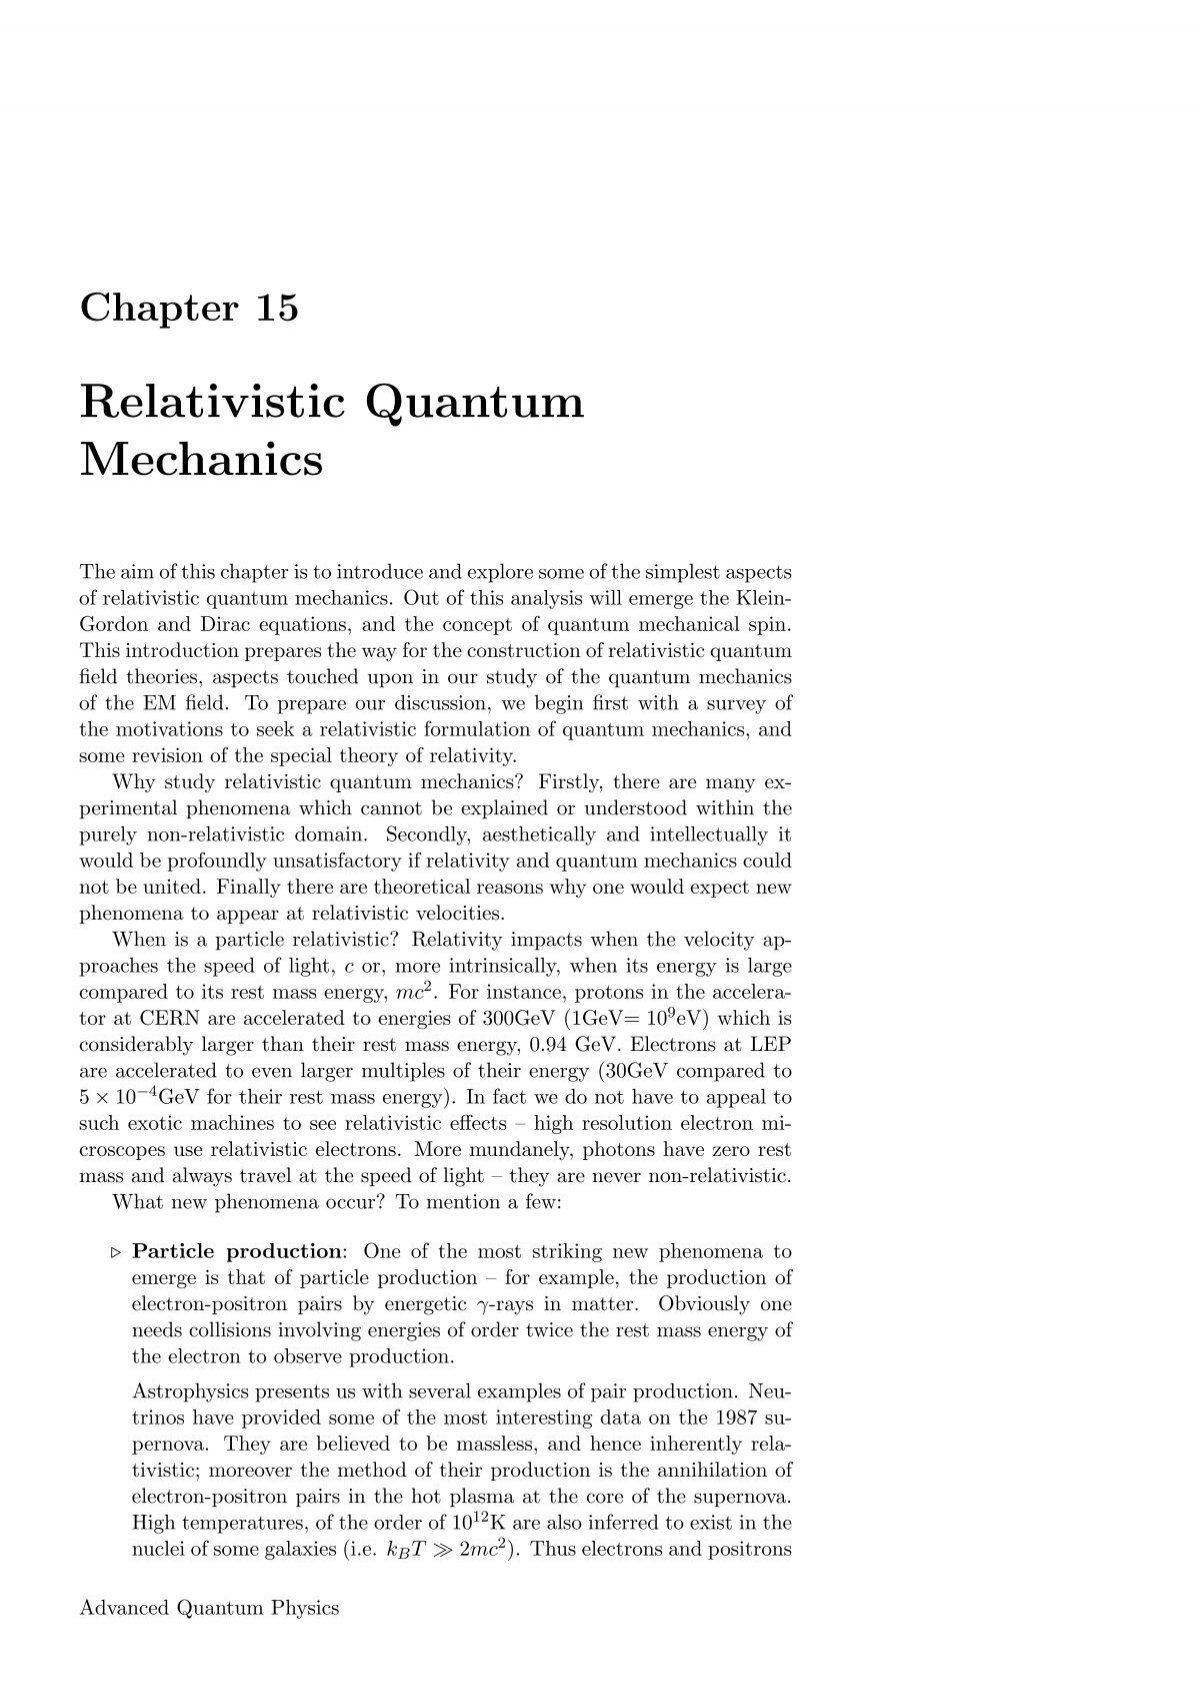 Relativistic Quantum Mechanics Theory Of Condensed Matter